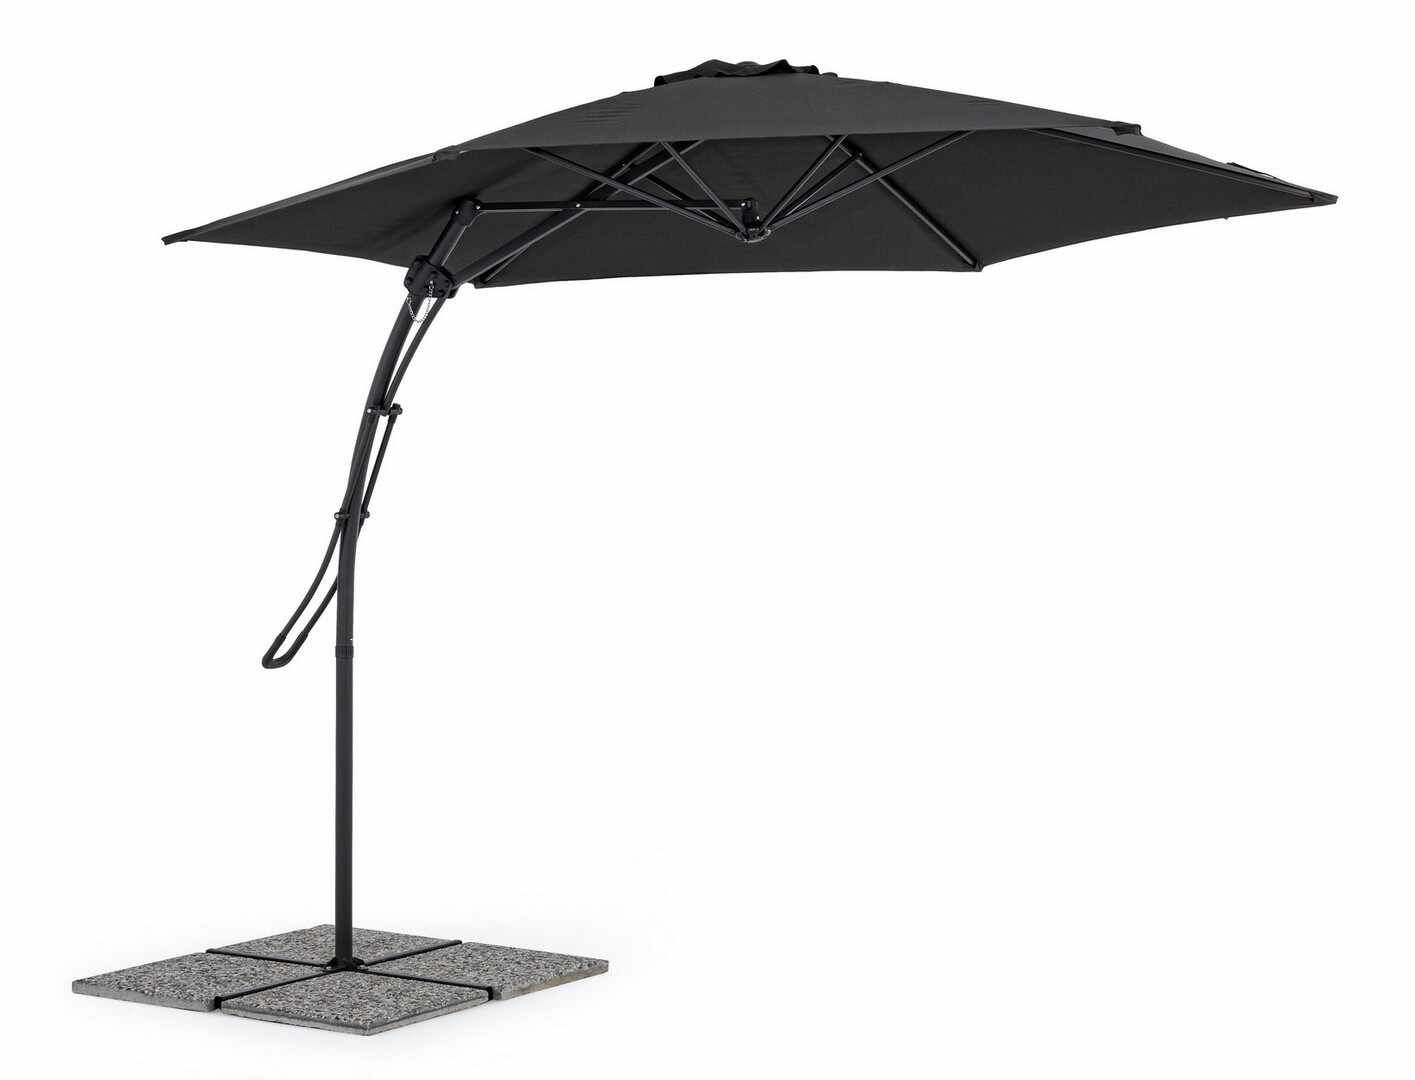 Umbrela de soare suspendata, Sorrento Gri Inchis, Ø300xH243 cm